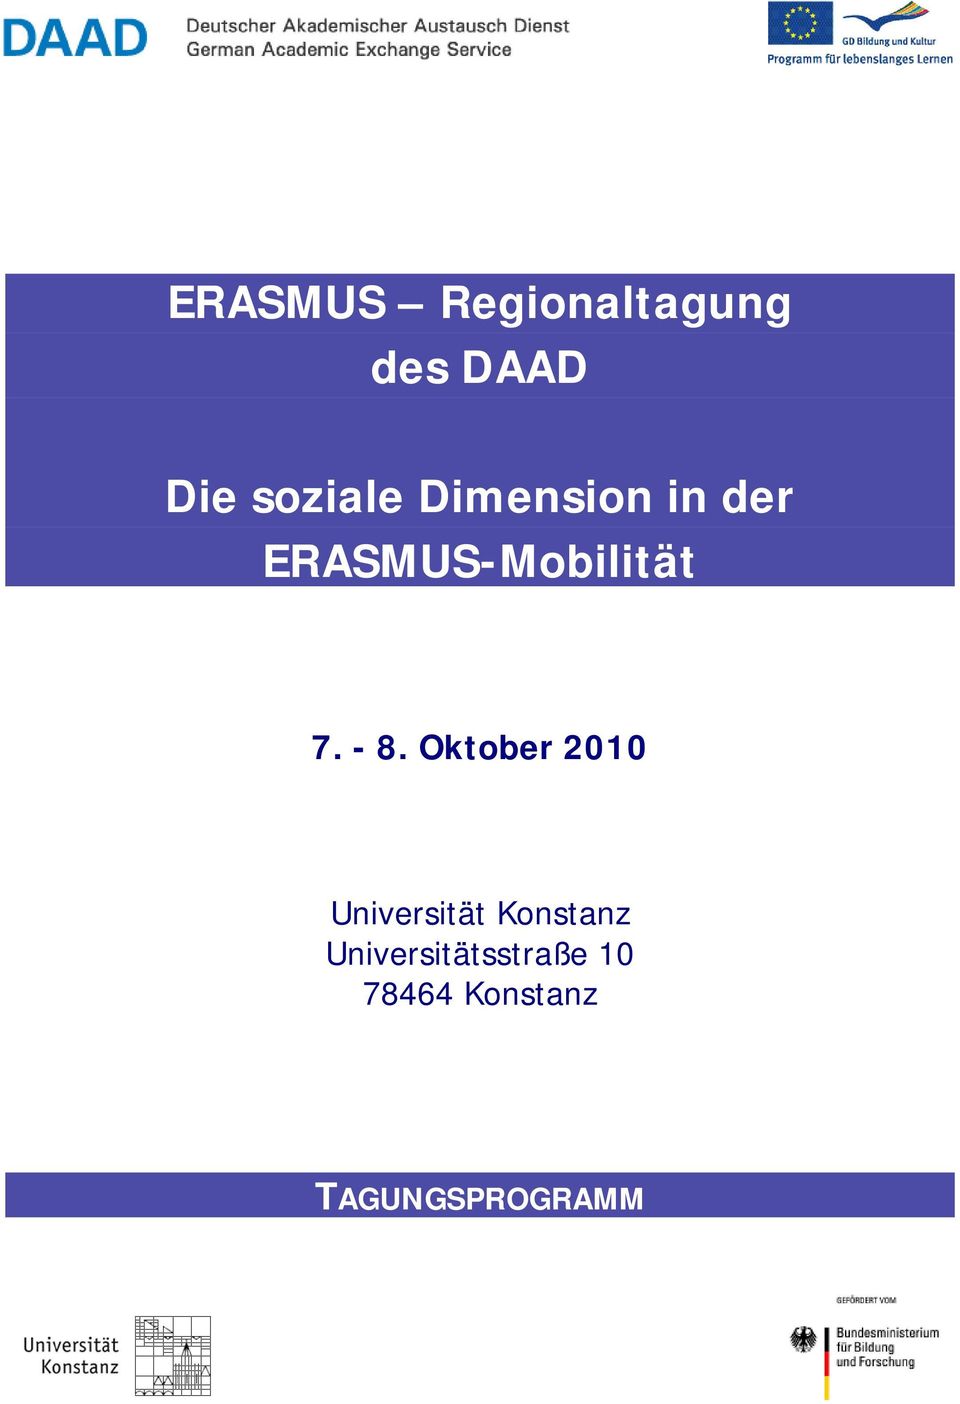 ERASMUS-Mobilität Universität